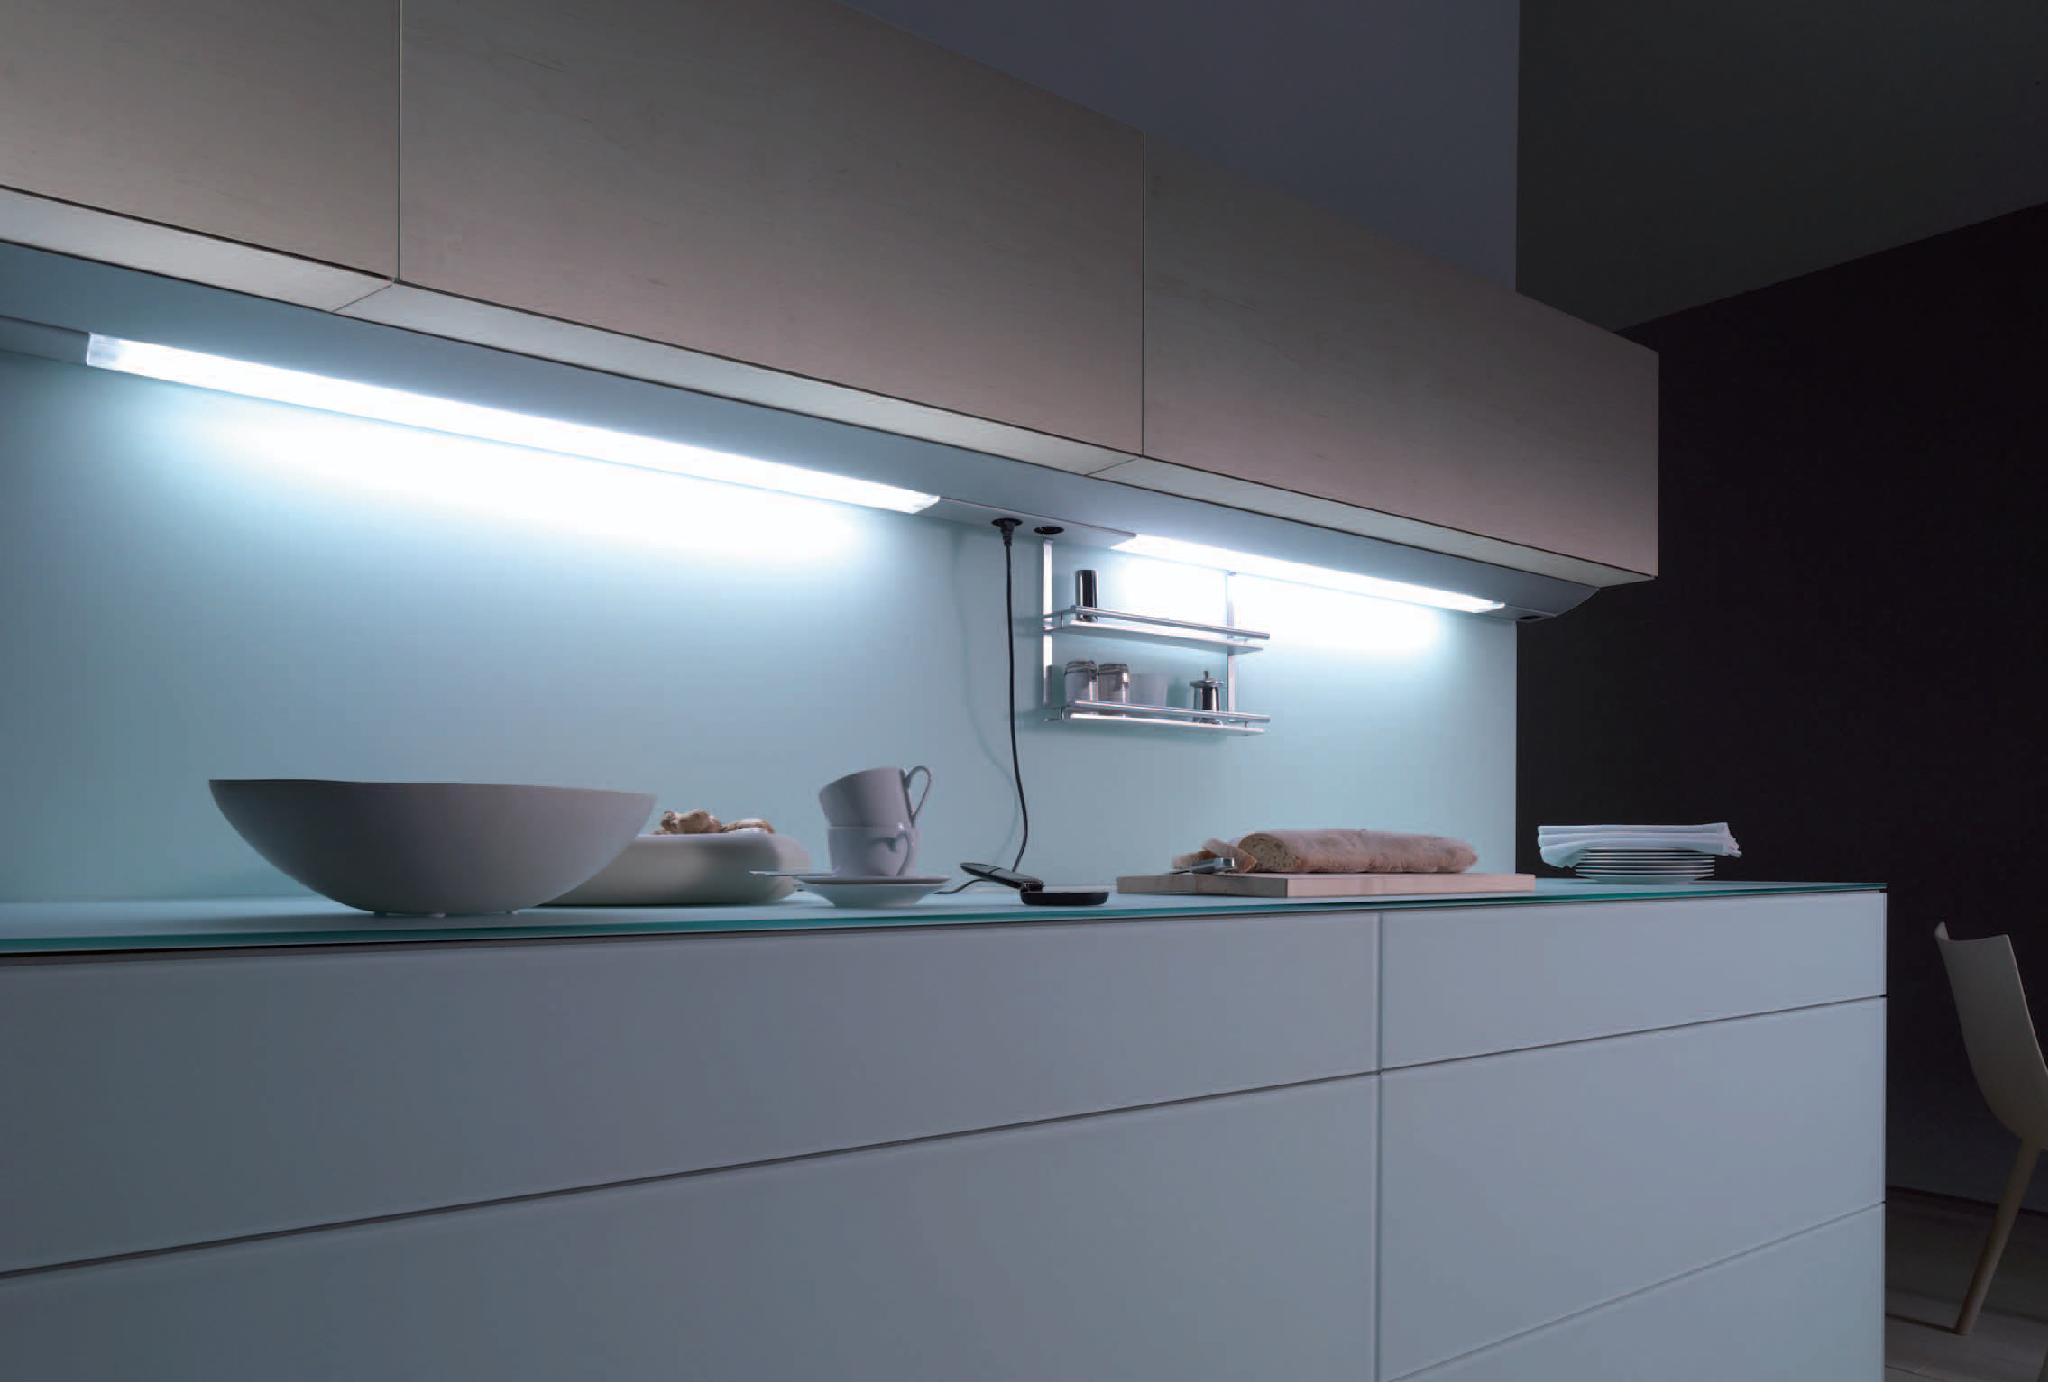 Лучшая подсветка для кухни. Линейный светильник Obi Kitchen led-144. Подсветка столешницы ikea для кухни под шкафы светодиодная. Светильник для подсветки кухни под шкафом поворотный Luka 79154/08/36. Линейный светильник Obi Kitchen led-54.